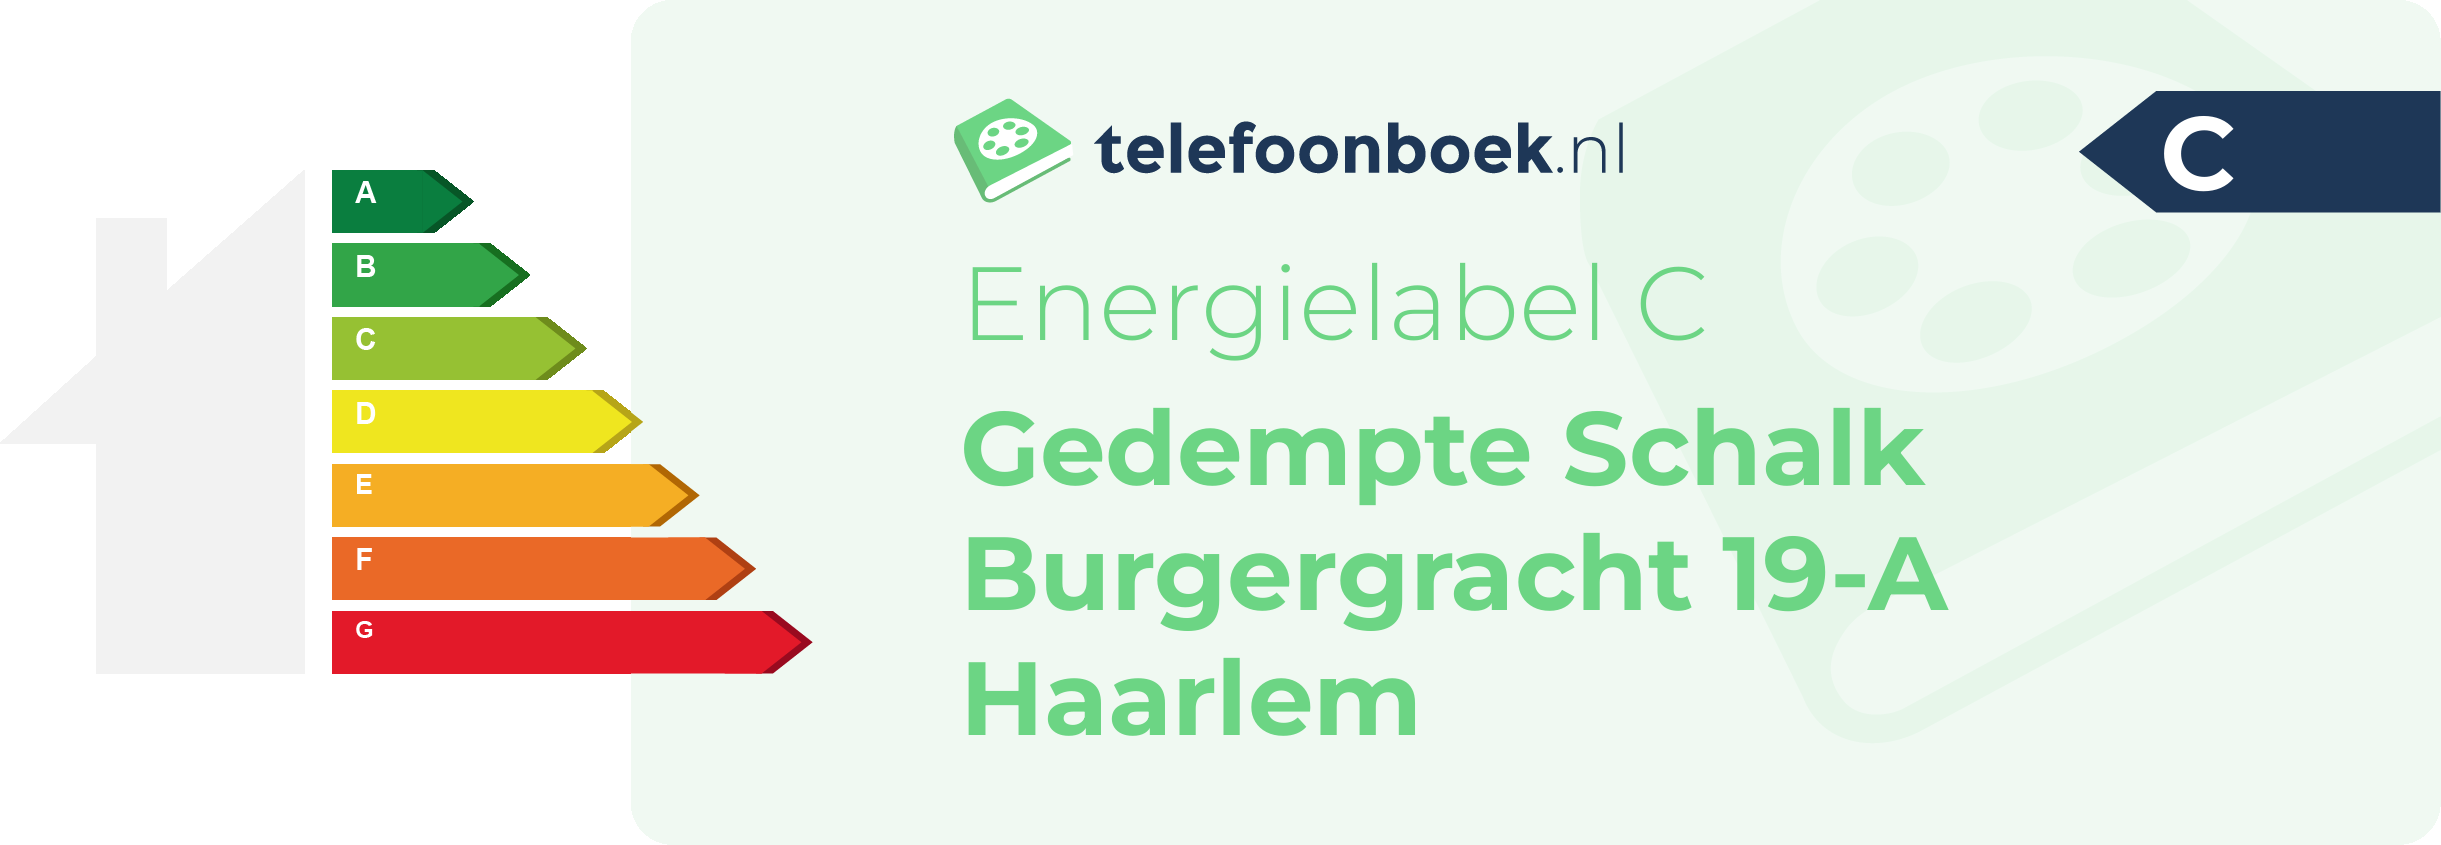 Energielabel Gedempte Schalk Burgergracht 19-A Haarlem